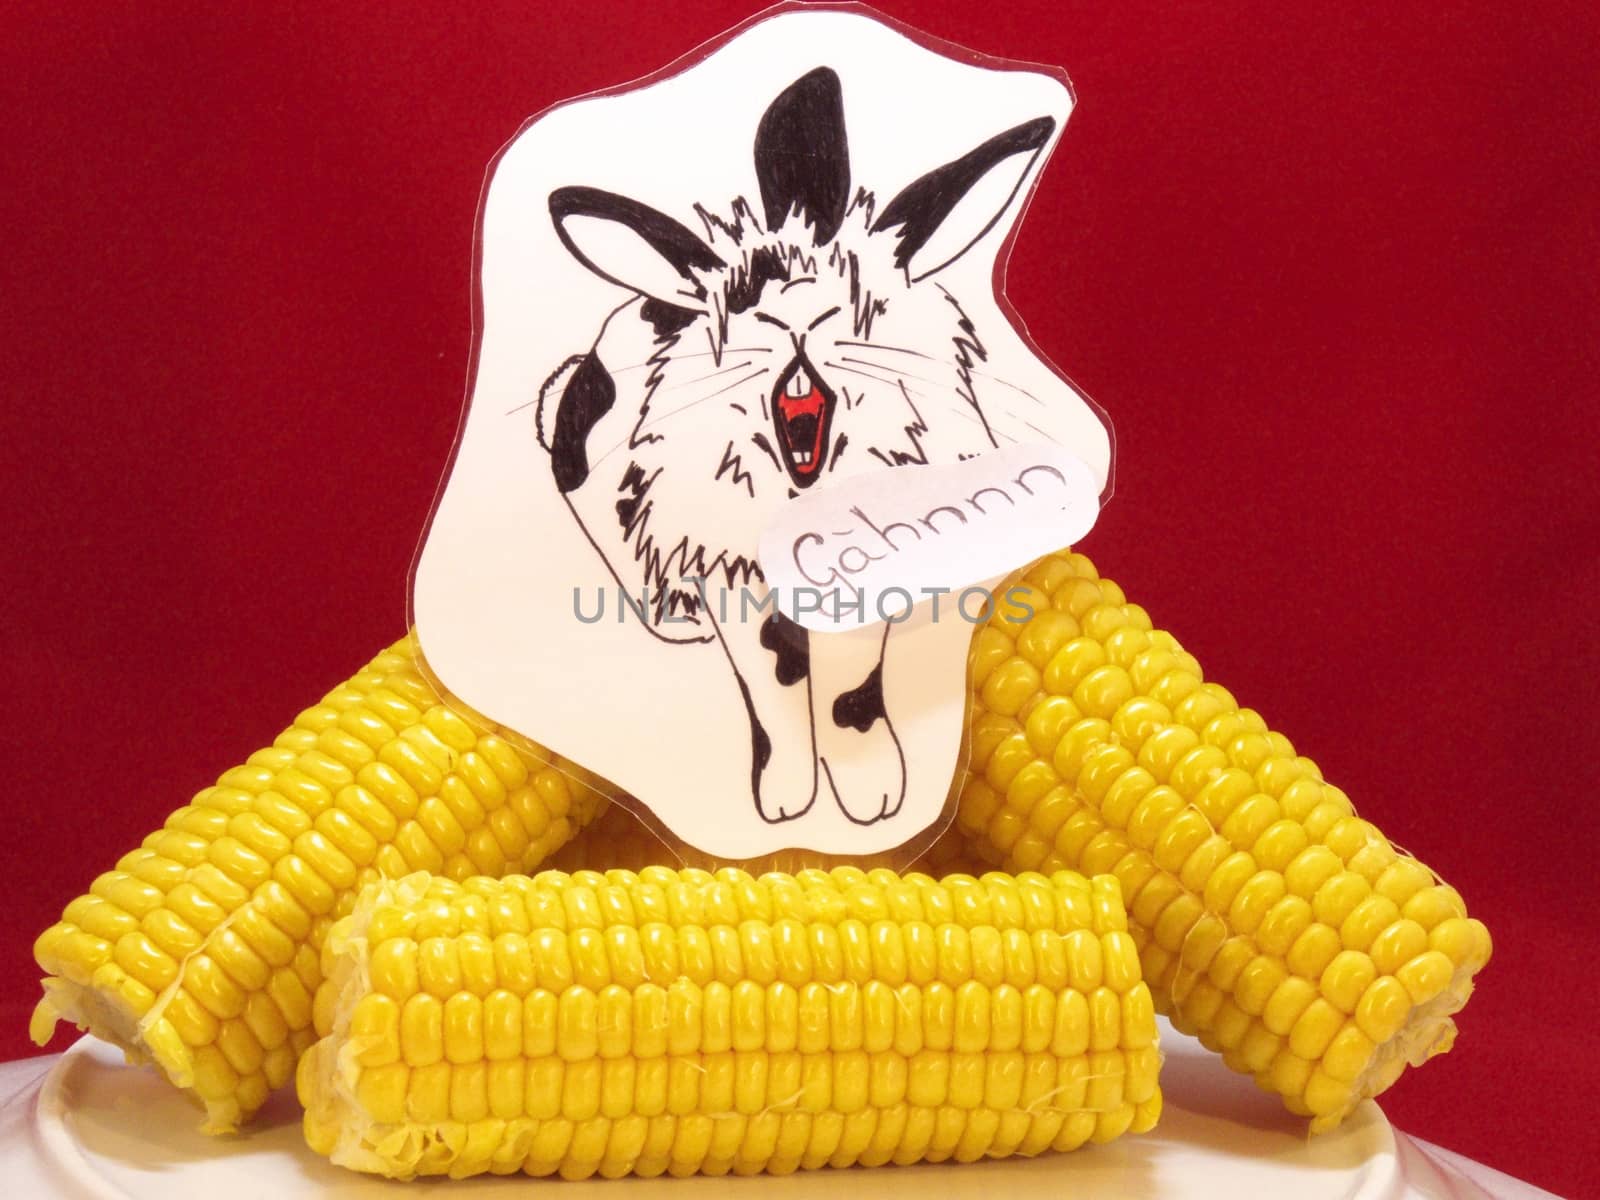 Fun, corn gene. Bunny with three ears